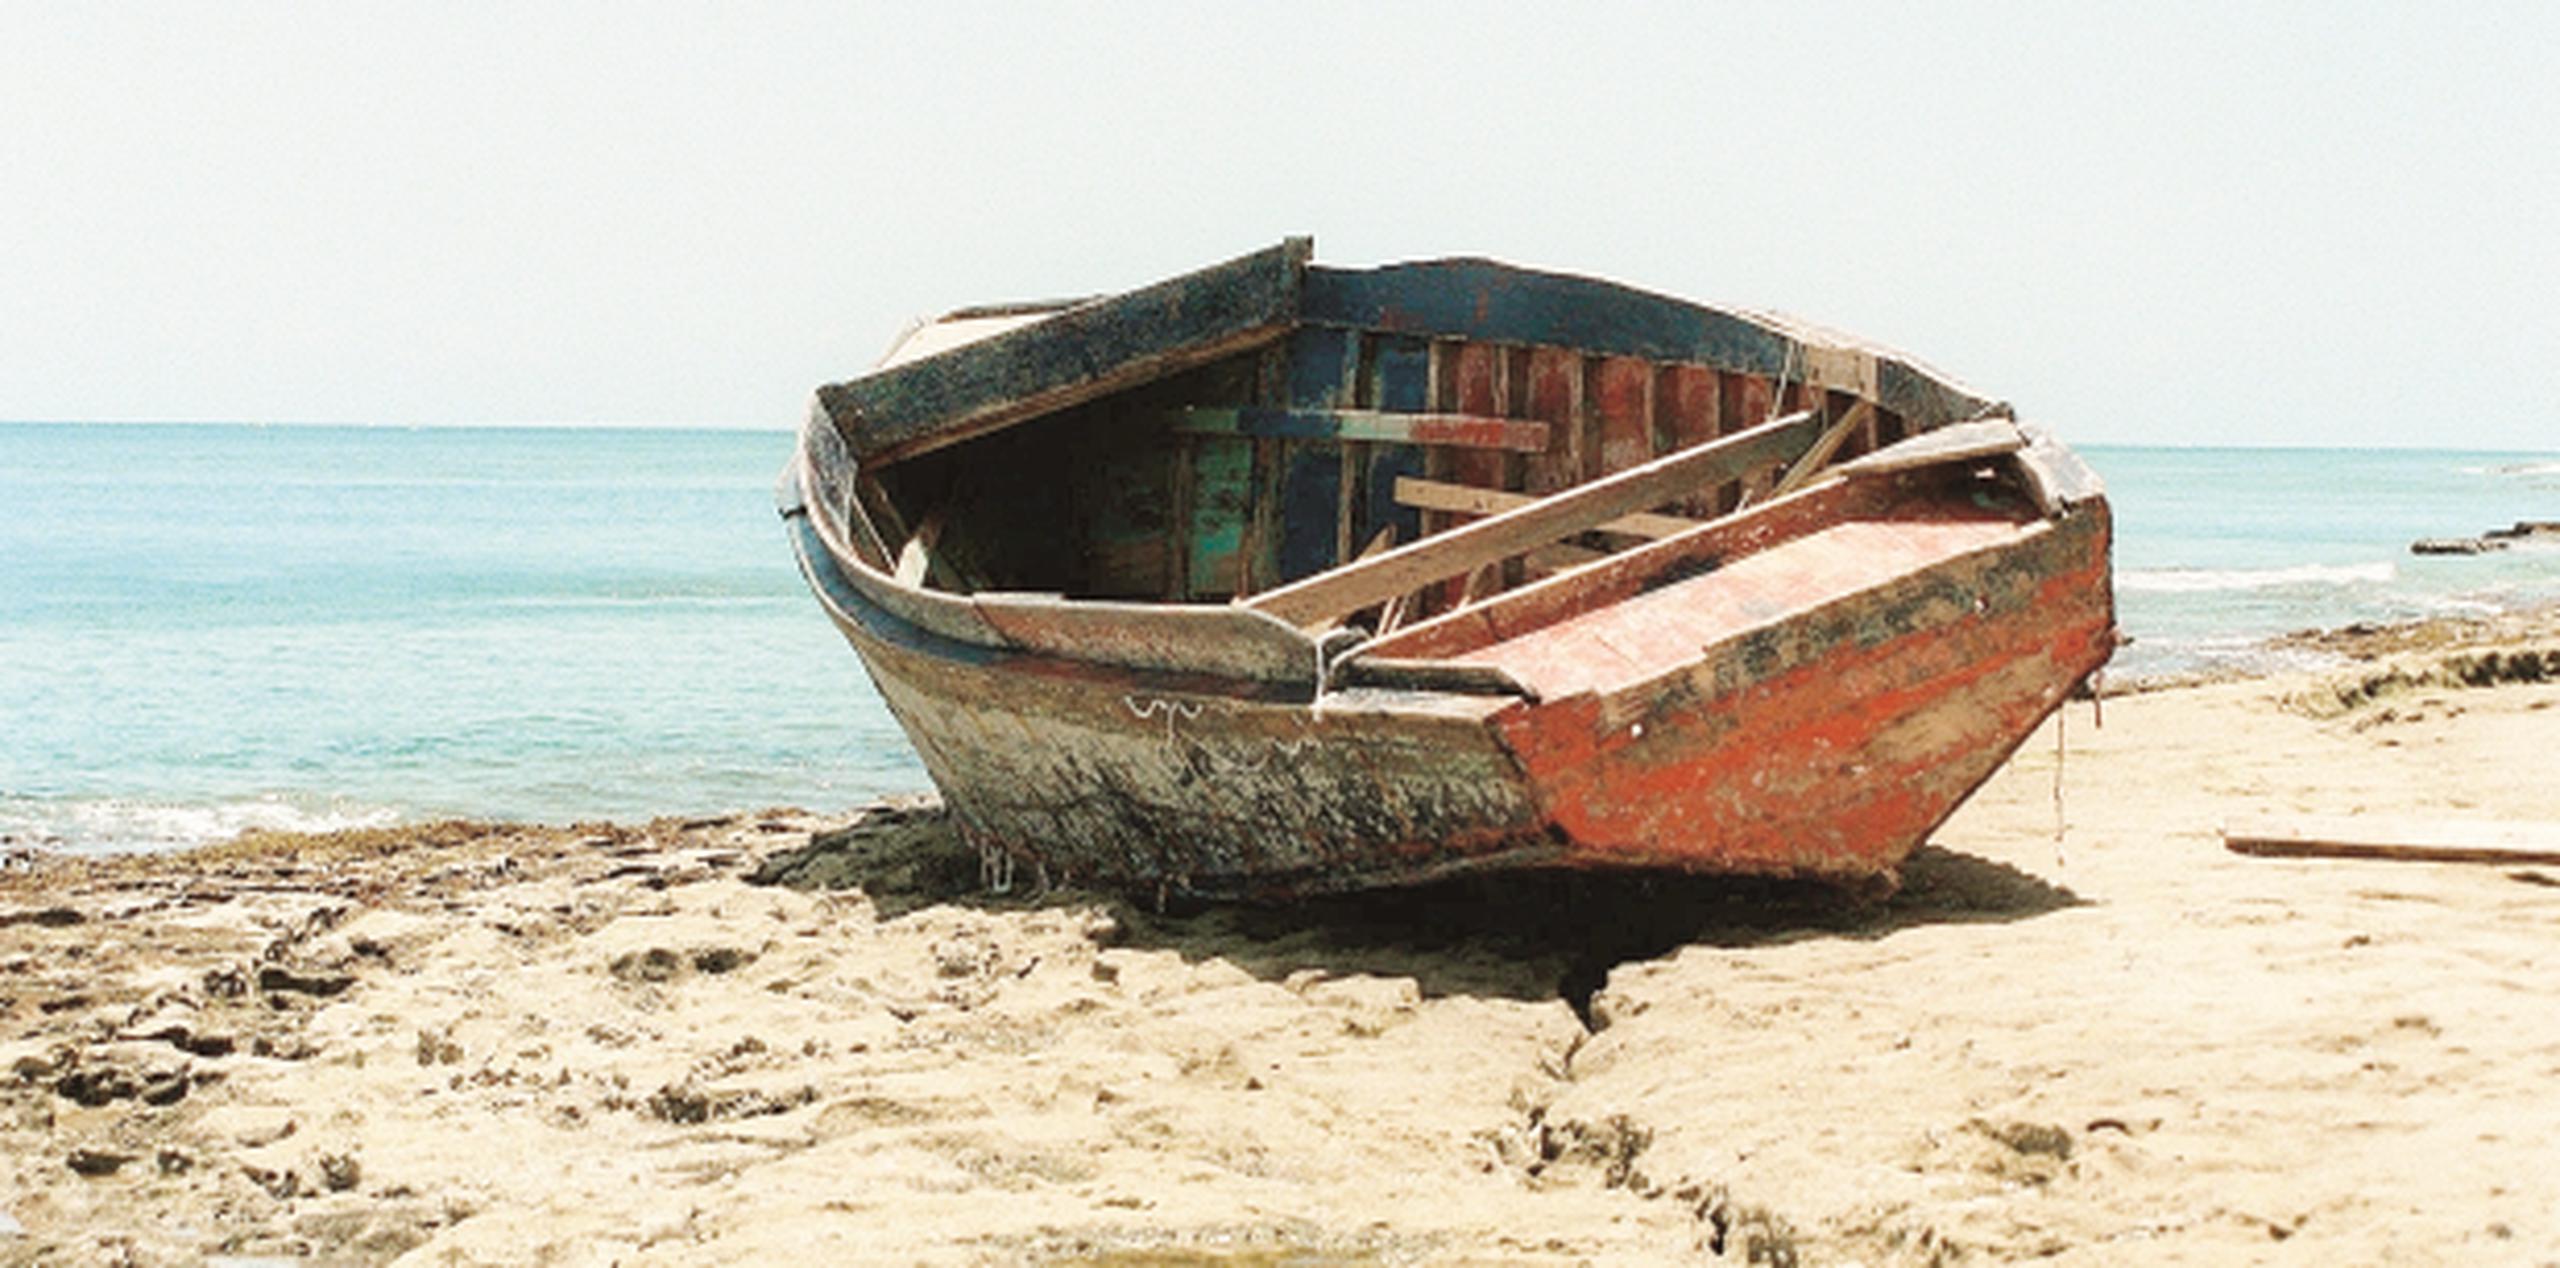 Llegaron procedentes de Cuba a bordo de una embarcación de 20 a 22 pies de eslora, fabricada en madera, color azul y sin motores. (Archivo)